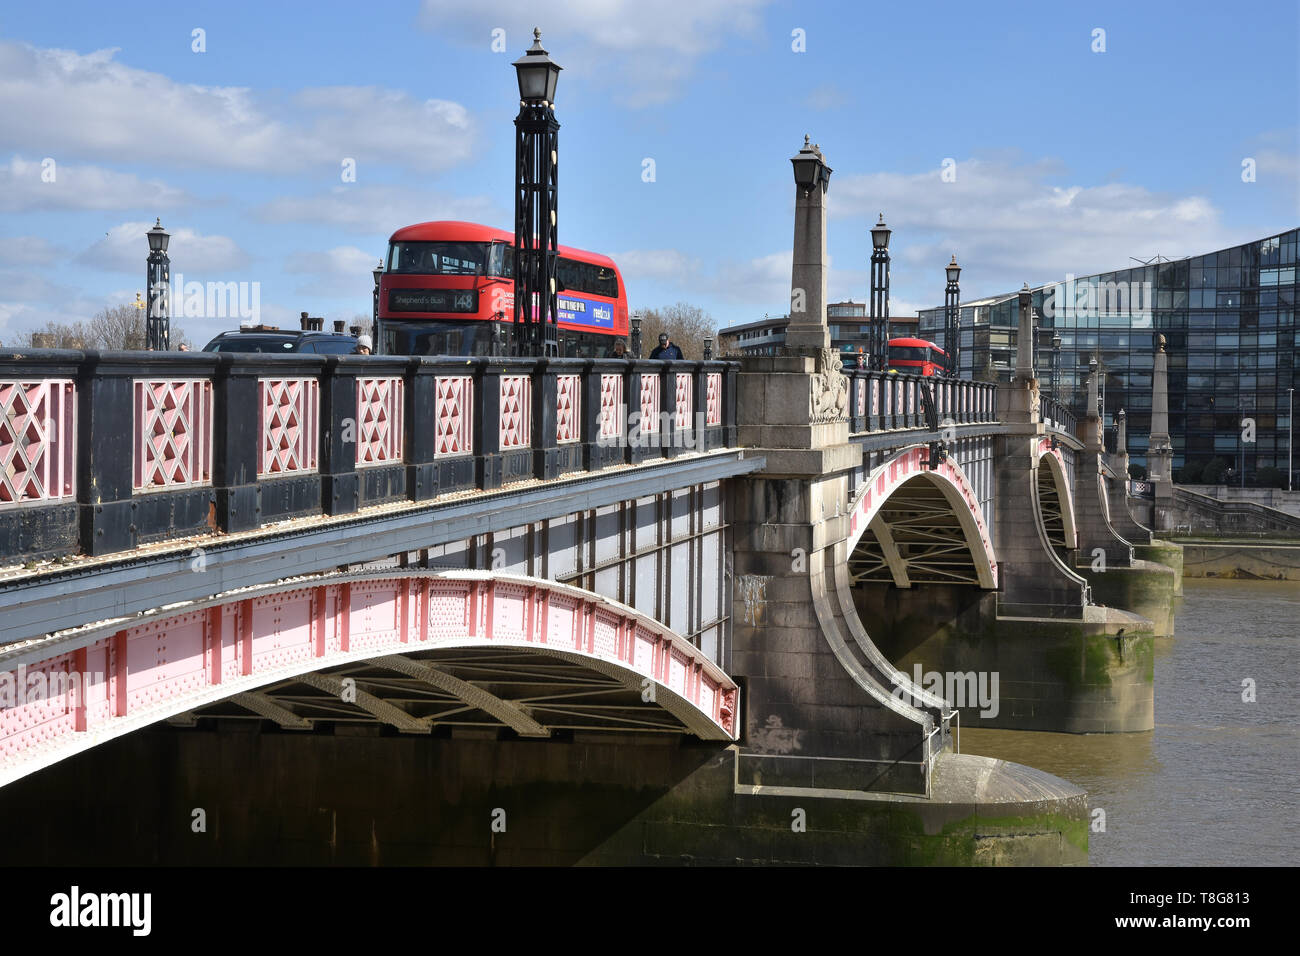 London bus rouge traversée de Lambeth Bridge, Westminster, Londres. UK Banque D'Images